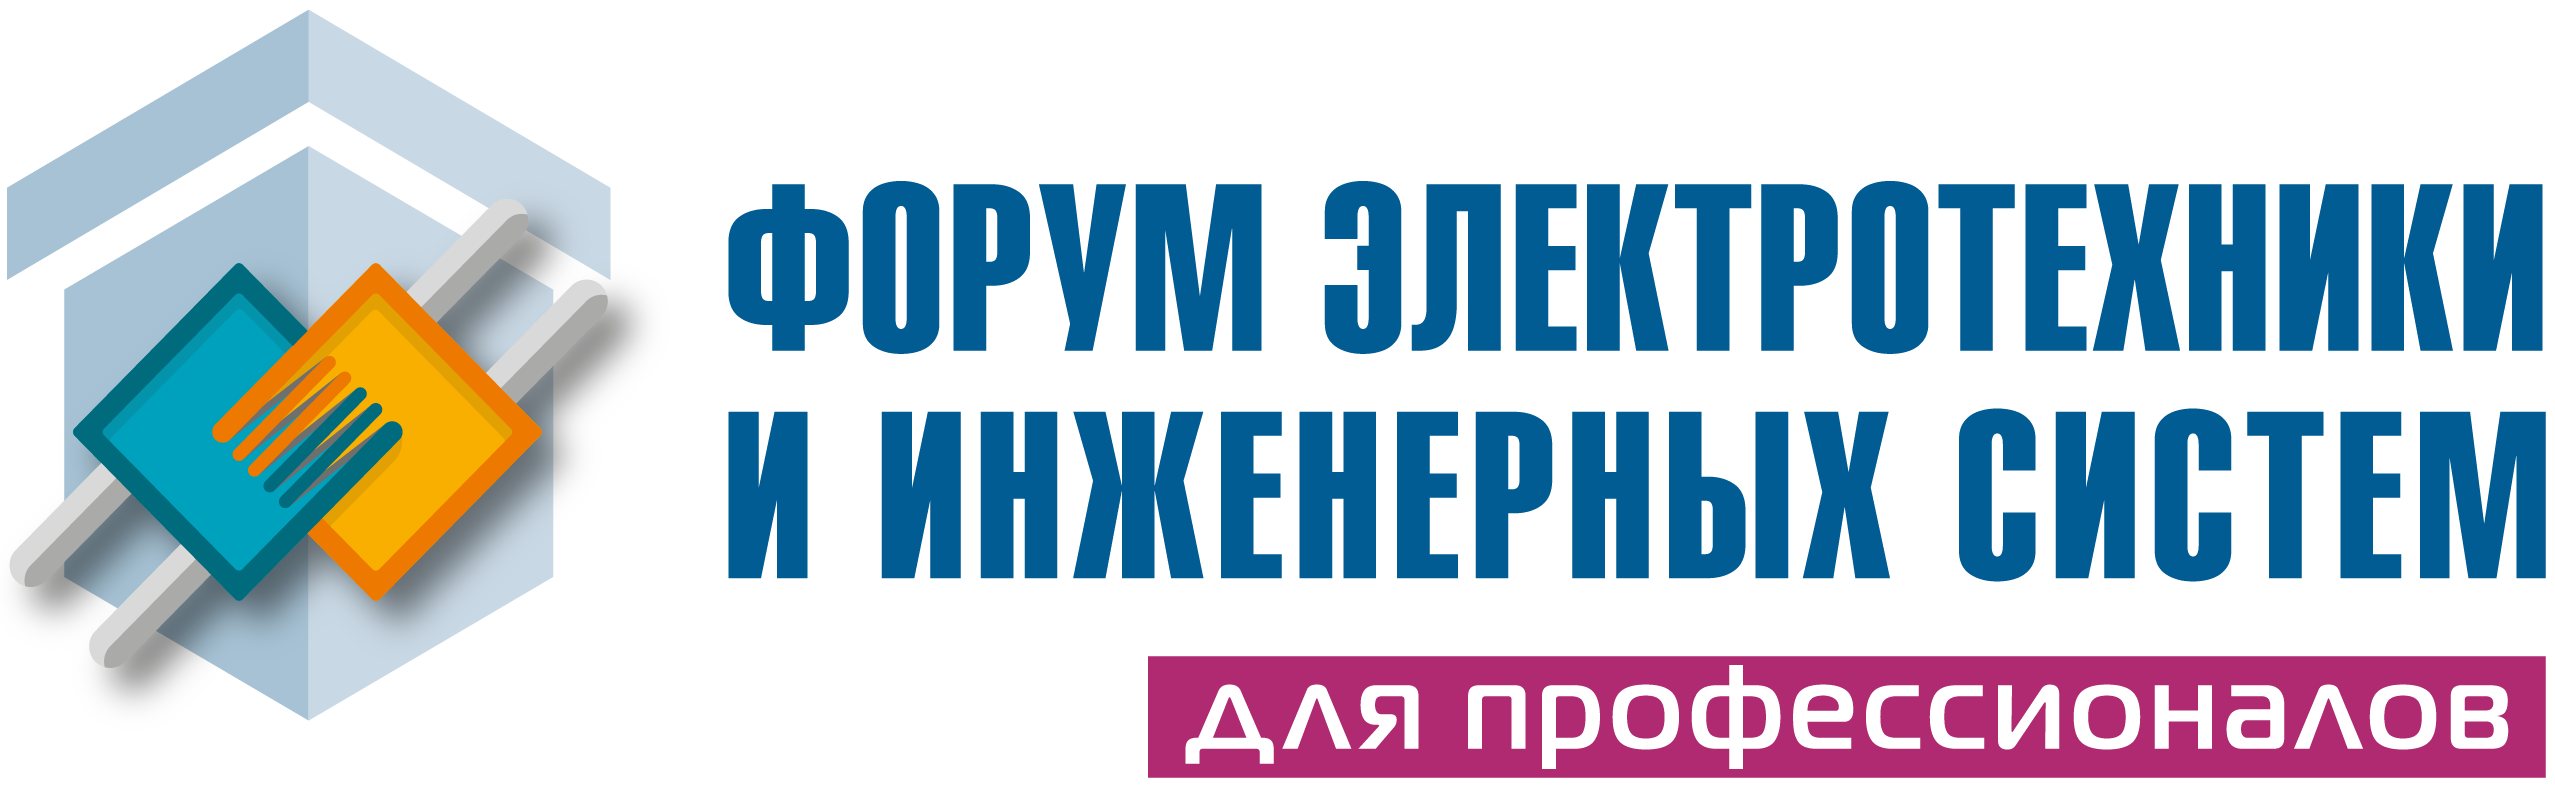 Логотип Форум электротехники и инженерных систем Монтажная область 13